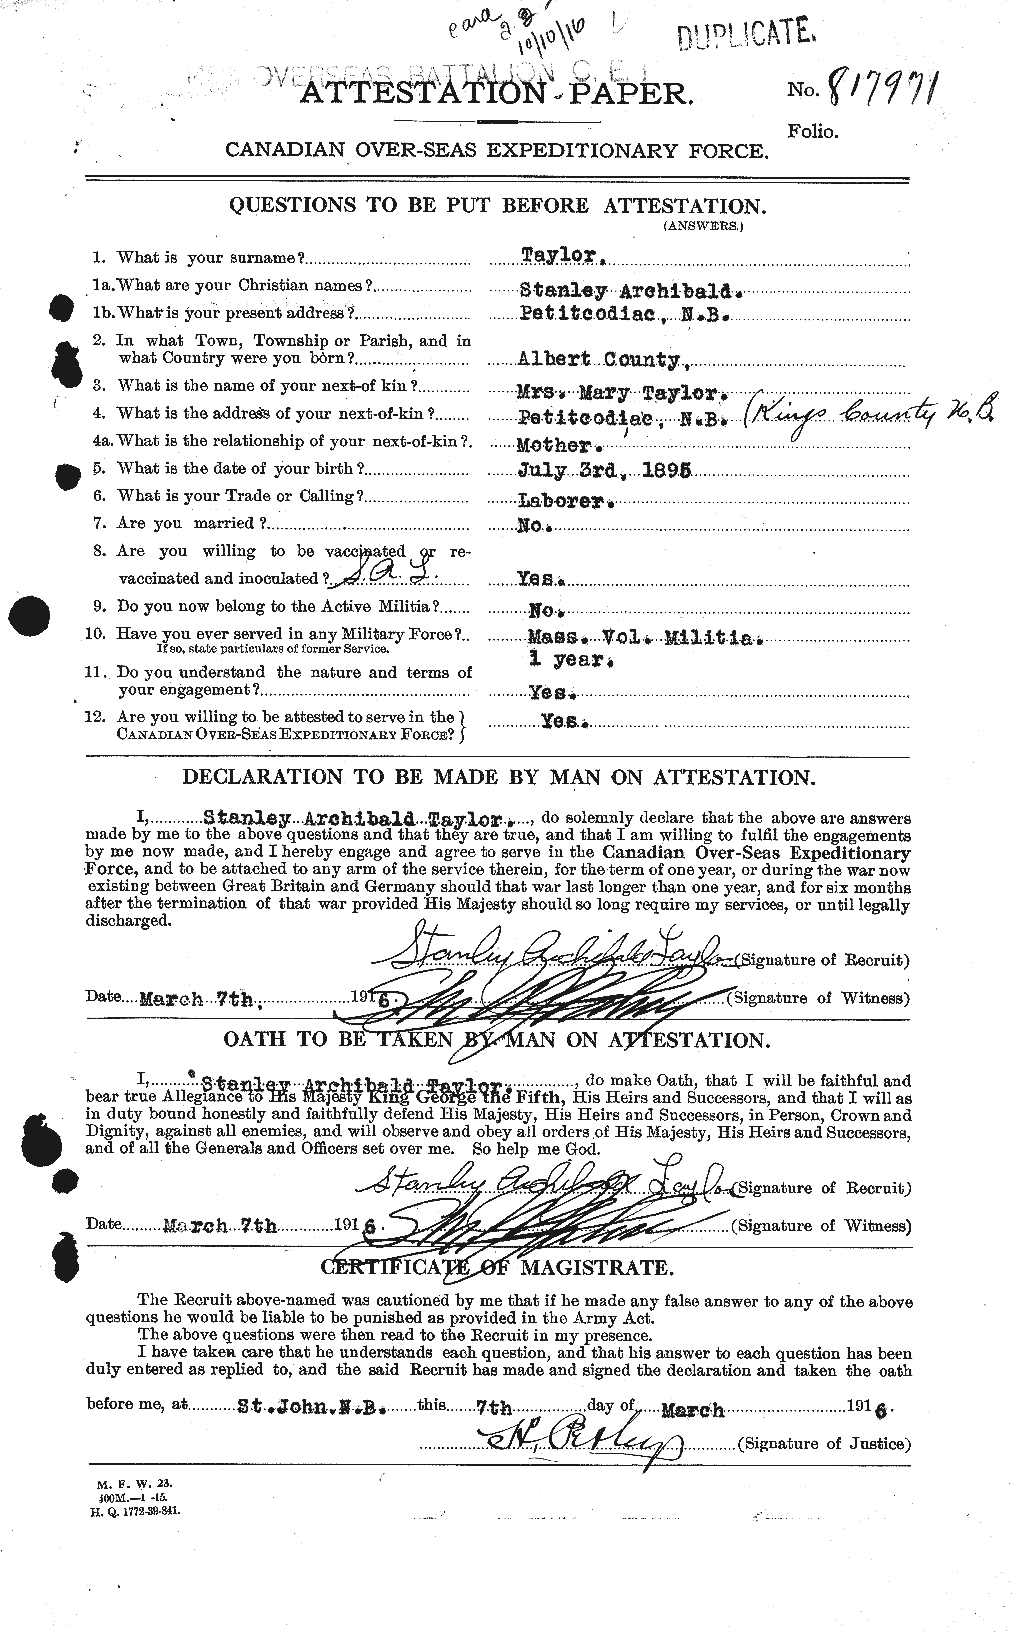 Dossiers du Personnel de la Première Guerre mondiale - CEC 627915a